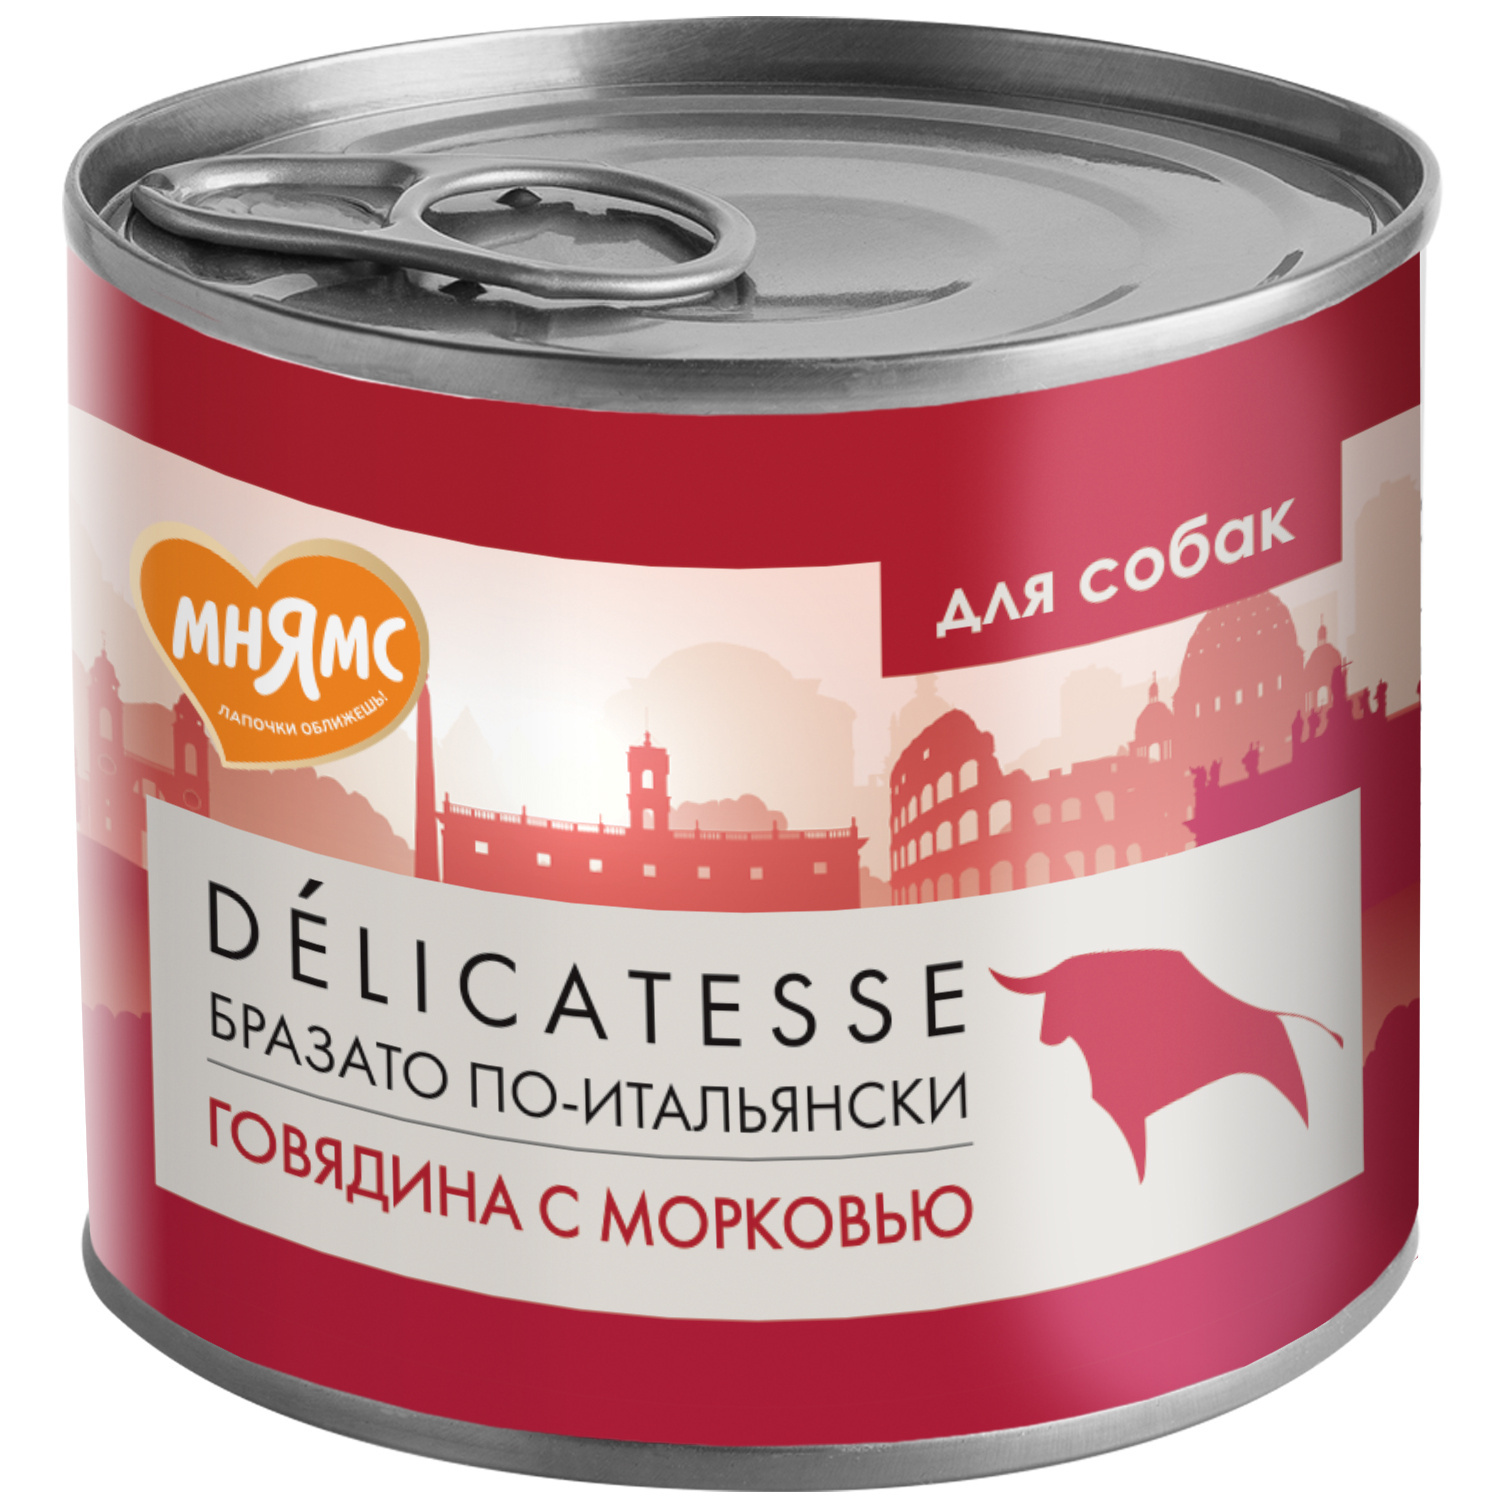 Мнямс Мнямс консервы Бразато по-итальянски для собак всех пород из говядины с морковью (200 г) мнямс консервы для собак бразато по итальянски говядина с морковью 200г